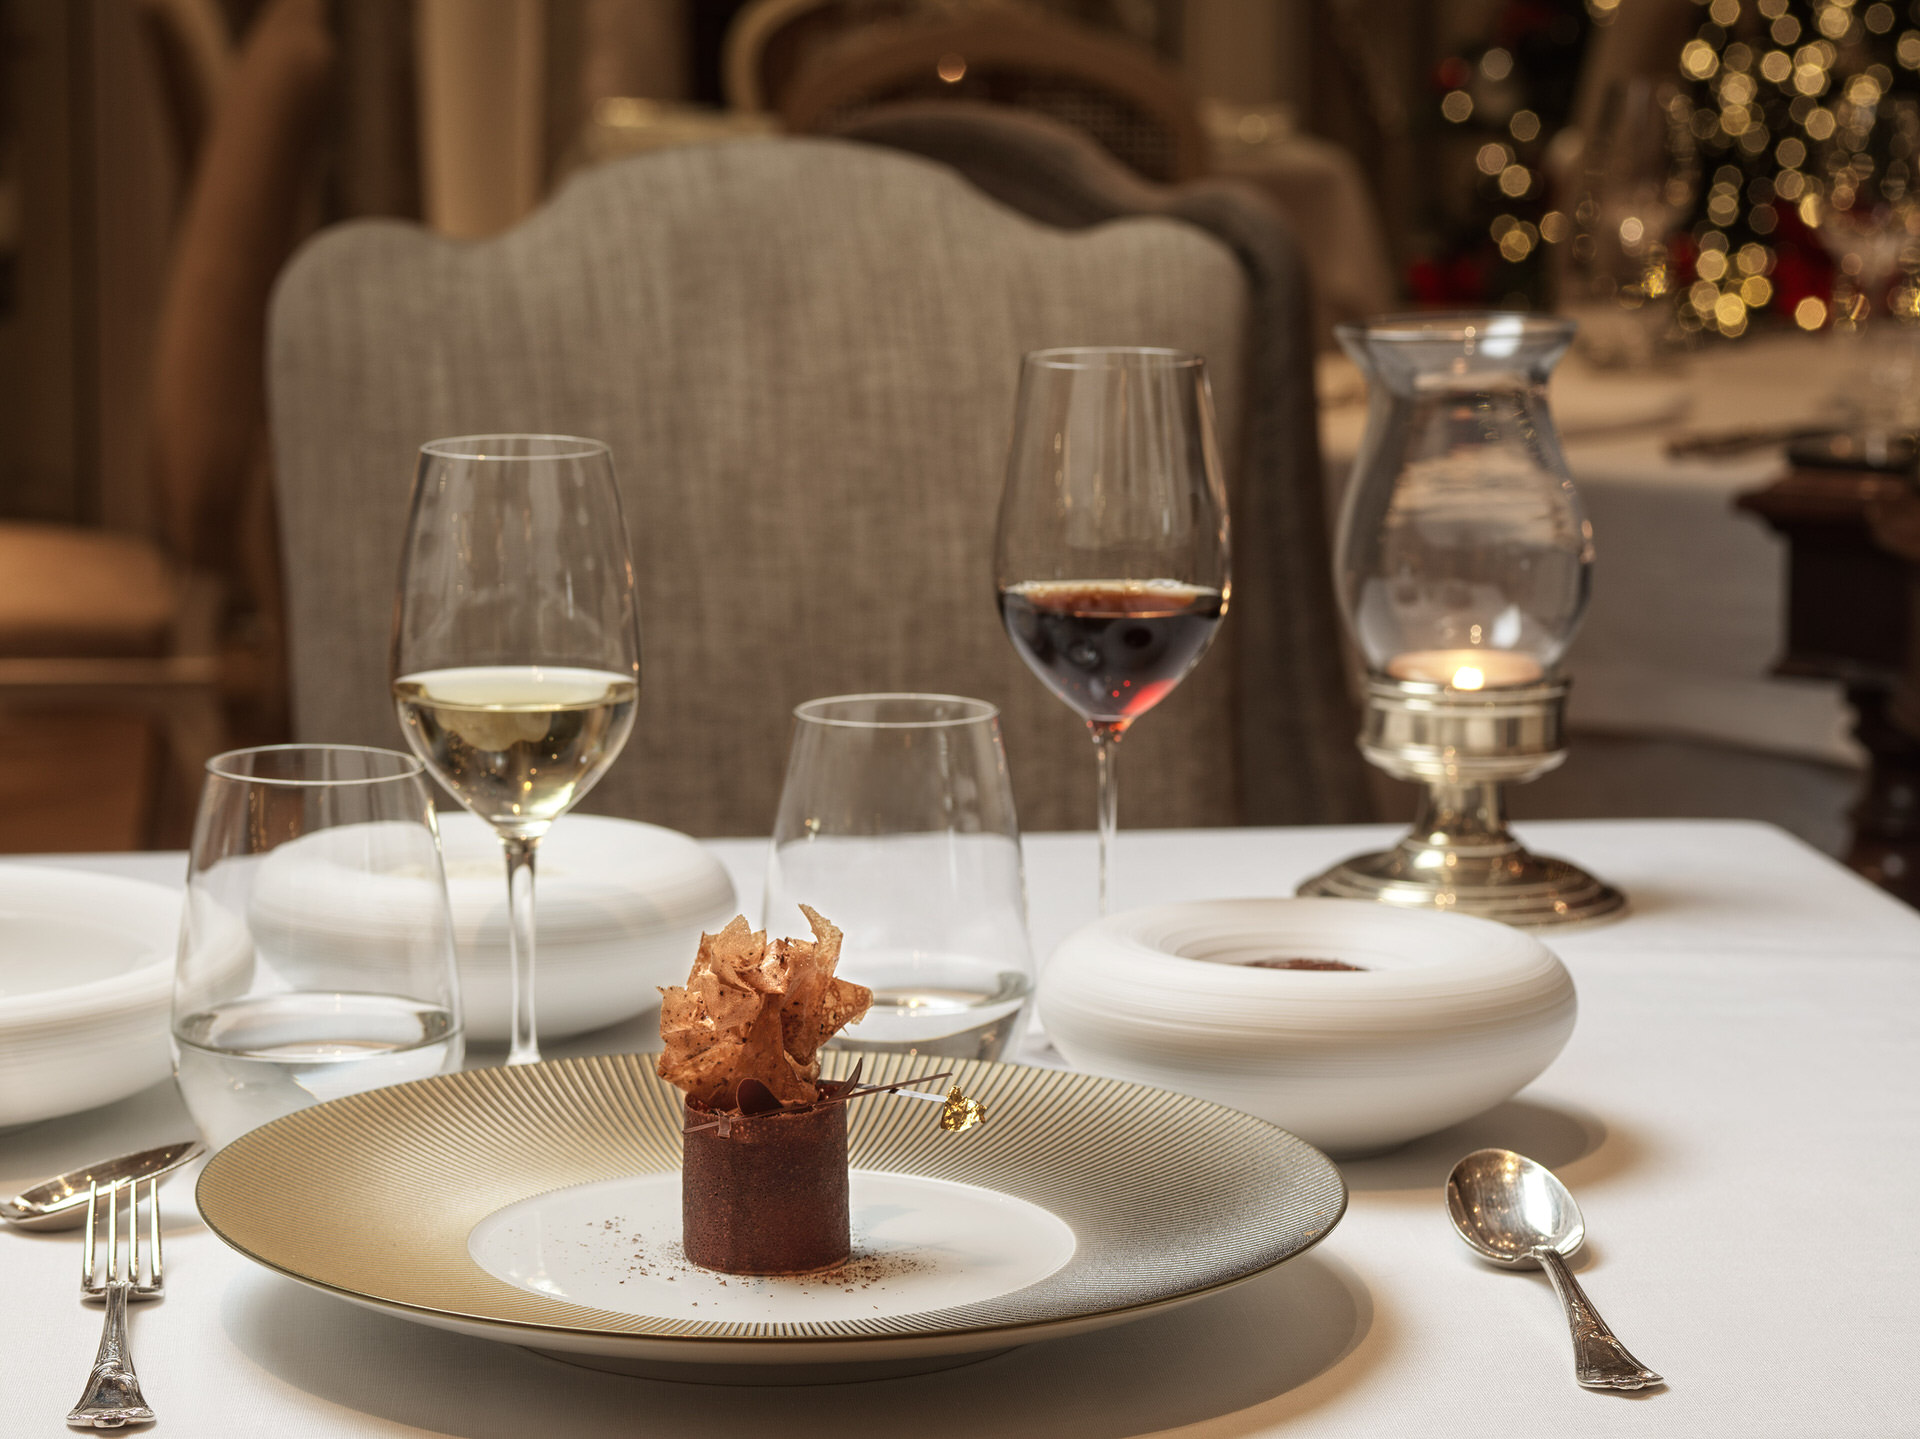 Το Tudor Hall Restaurant στο ξενοδοχείο King George απέκτησε το πρώτο αστέρι Michelin